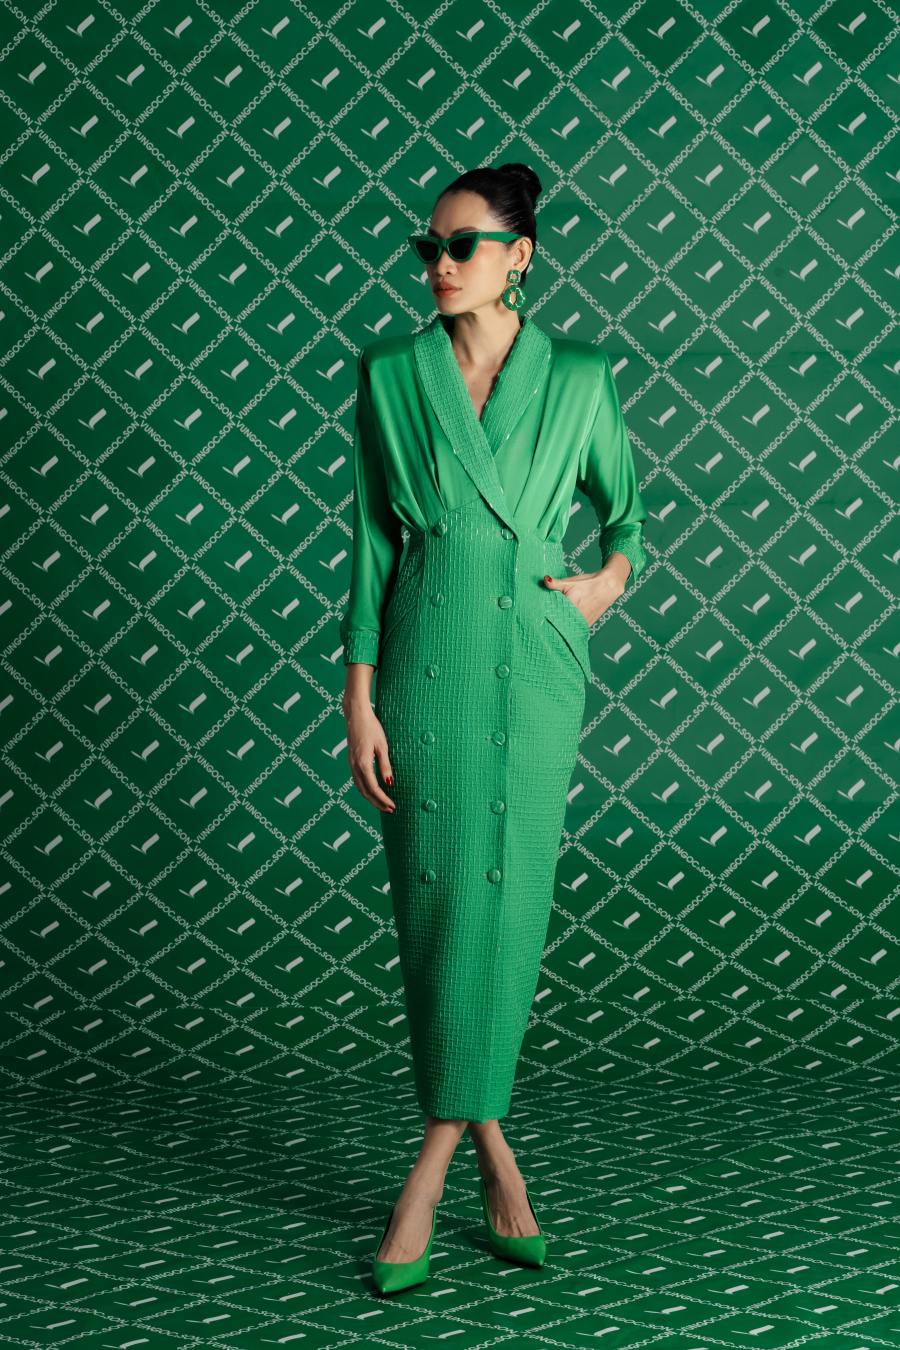 Kelly Green là tông màu duy nhất trong bộ sưu tập lần này mà hai nhà thiết kế thể hiện qua các trang phục mới nhất. Được biết, đây cũng là một trong những gam màu thịnh hành trong mùa thu&nbsp;đông năm nay mà các nhà mốt thế giới lăng xê.